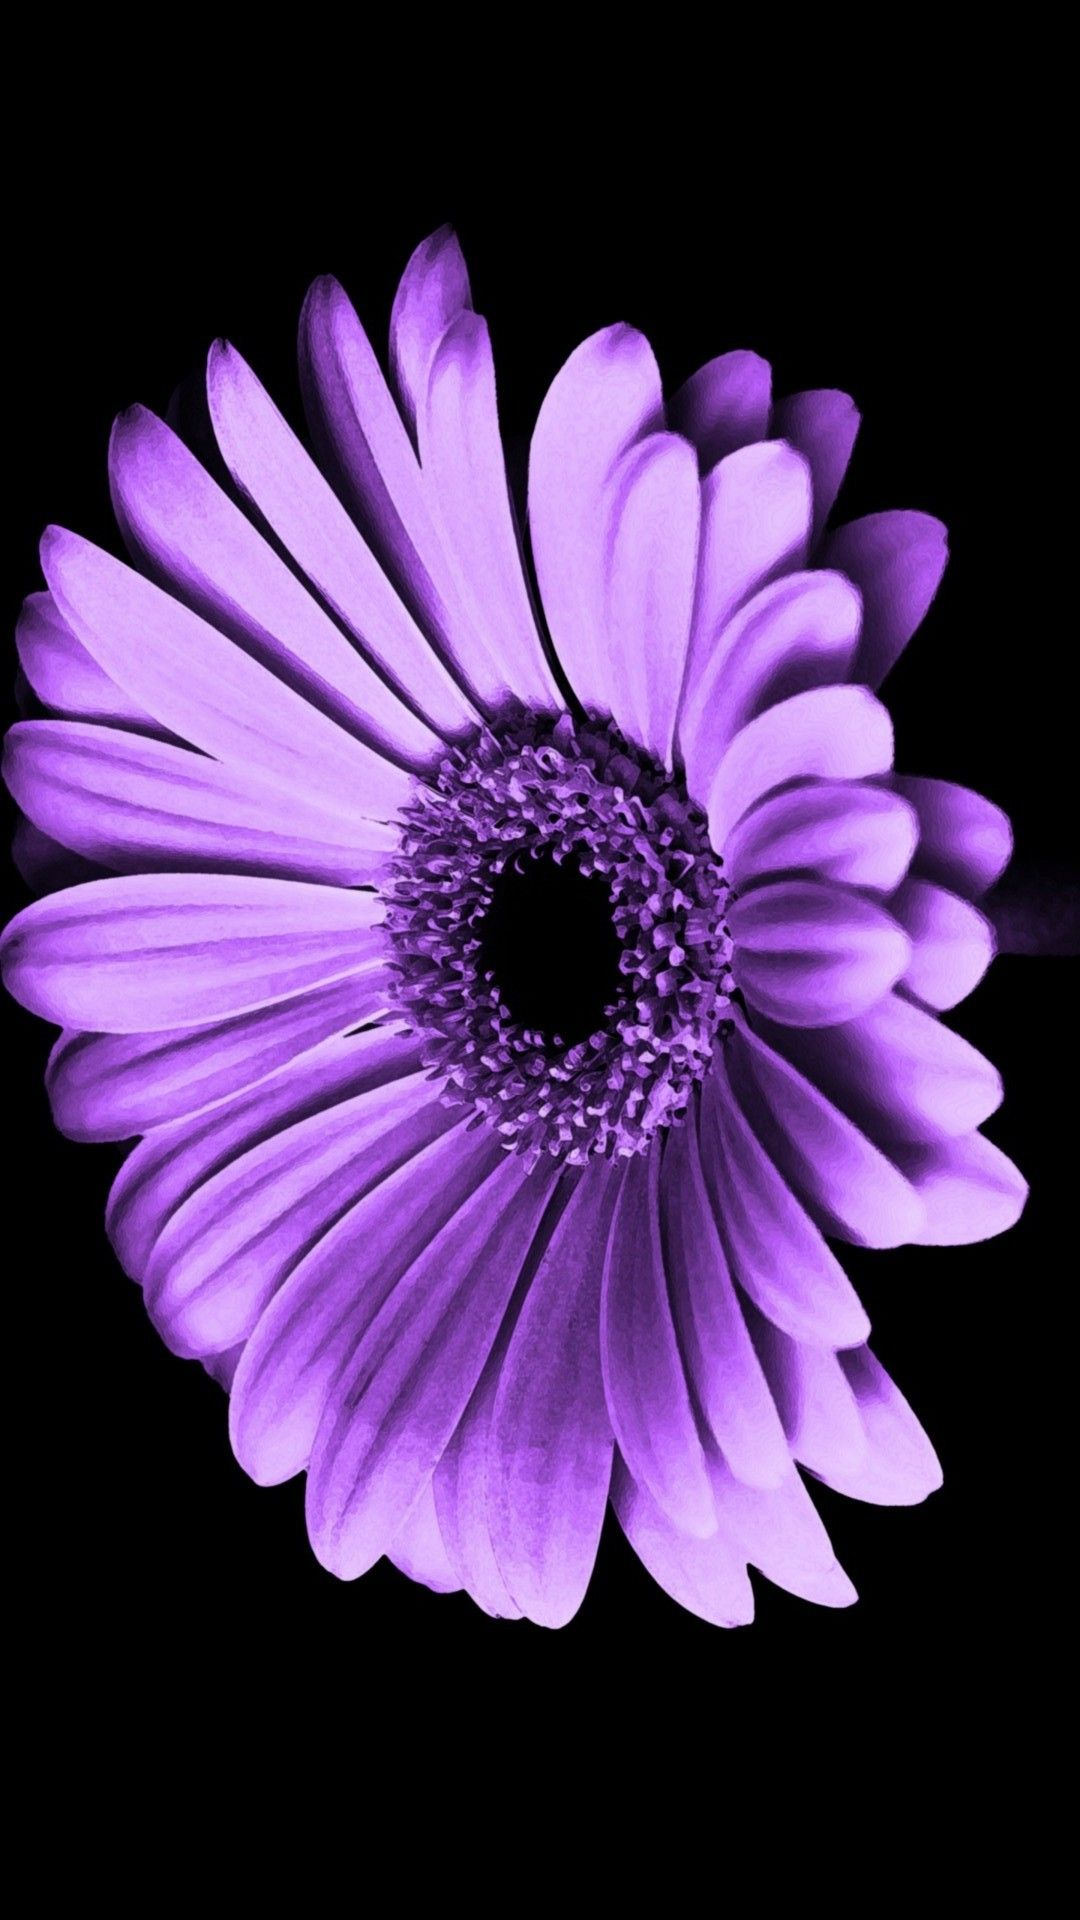 1080x1920 Purple Flowers iPhone Wallpaper HD | Best HD Wallpapers | Purple flowers wallpaper, Purple flowers, Iphone wallpaper purple flower